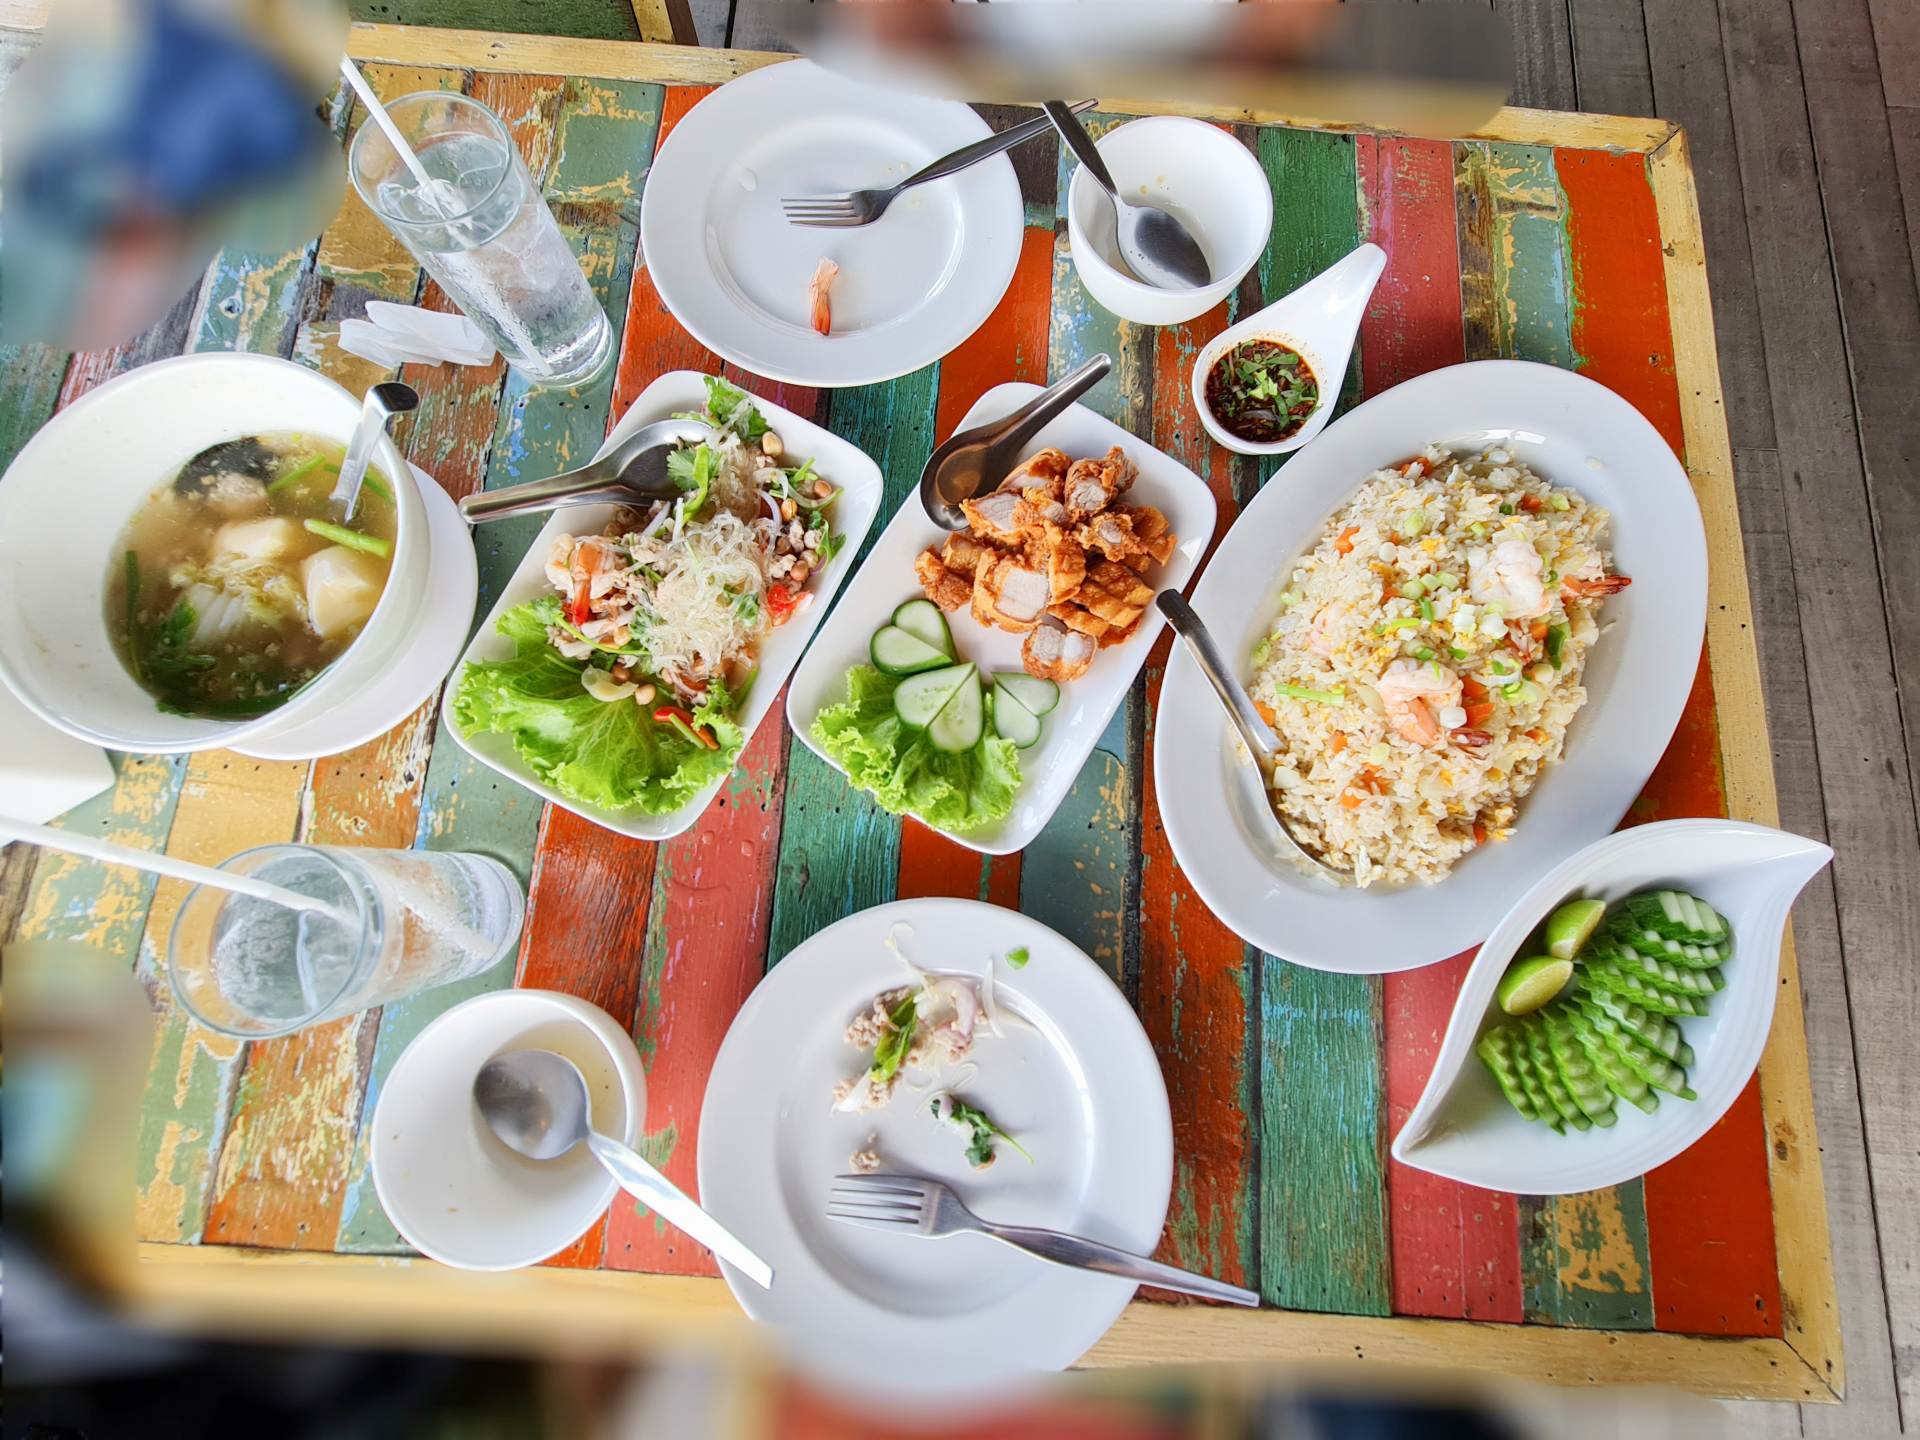 左から順に、ゲーンジュー（ト）タオフー（豆腐のスープ）、ヤムウンセン（春雨サラダ）、ムートート（揚げた豚肉）、カオパット・クン（エビチャーハン）